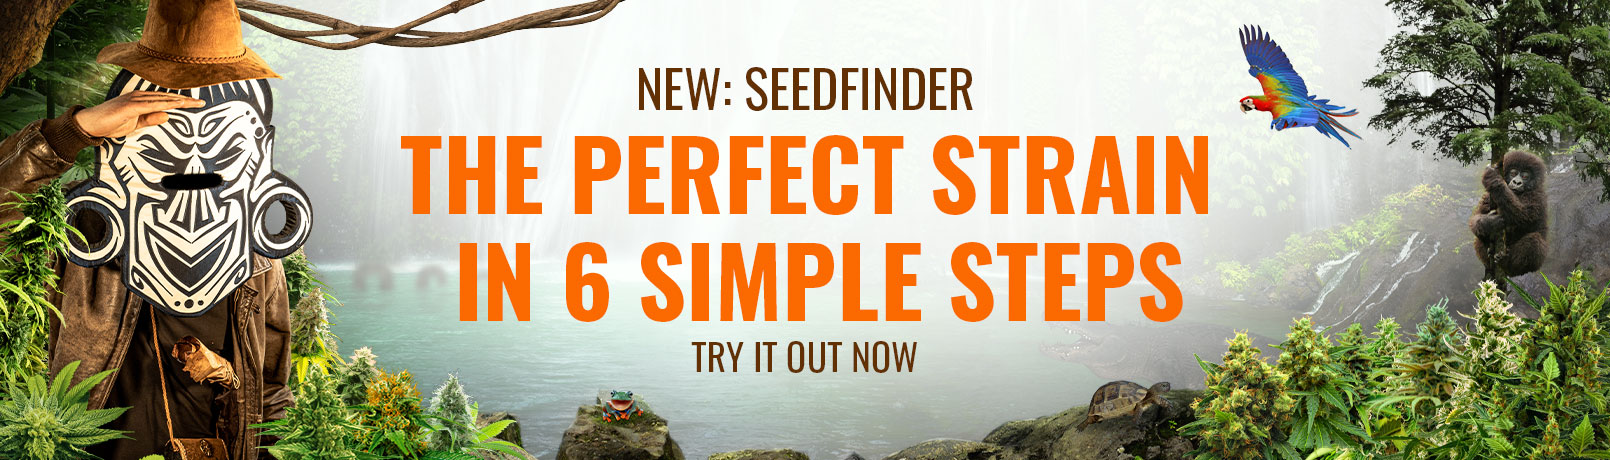 Seedfinder Current Offer Banner EN_offer